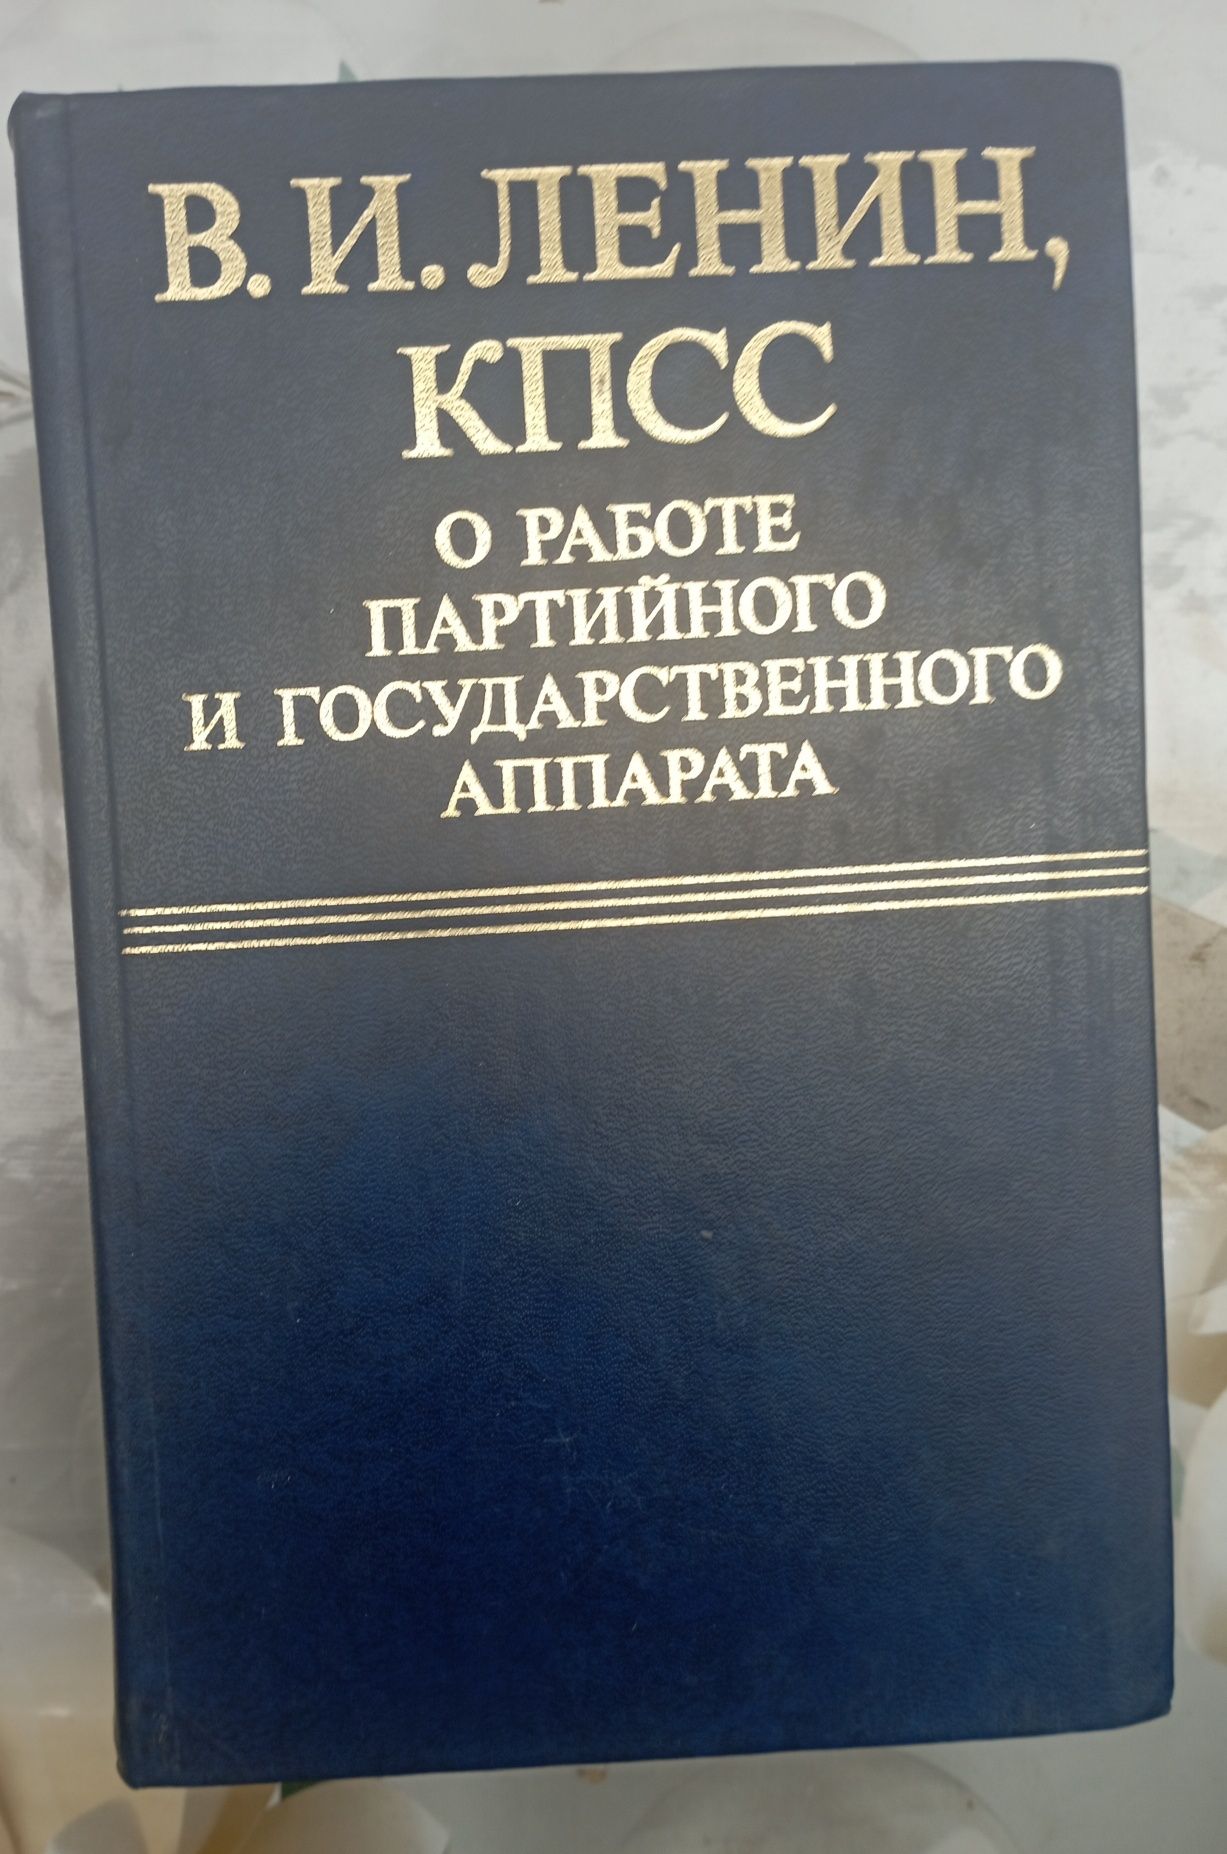 Сочинения В.И.Ленина, К.Маркса и Ф.Энгельса